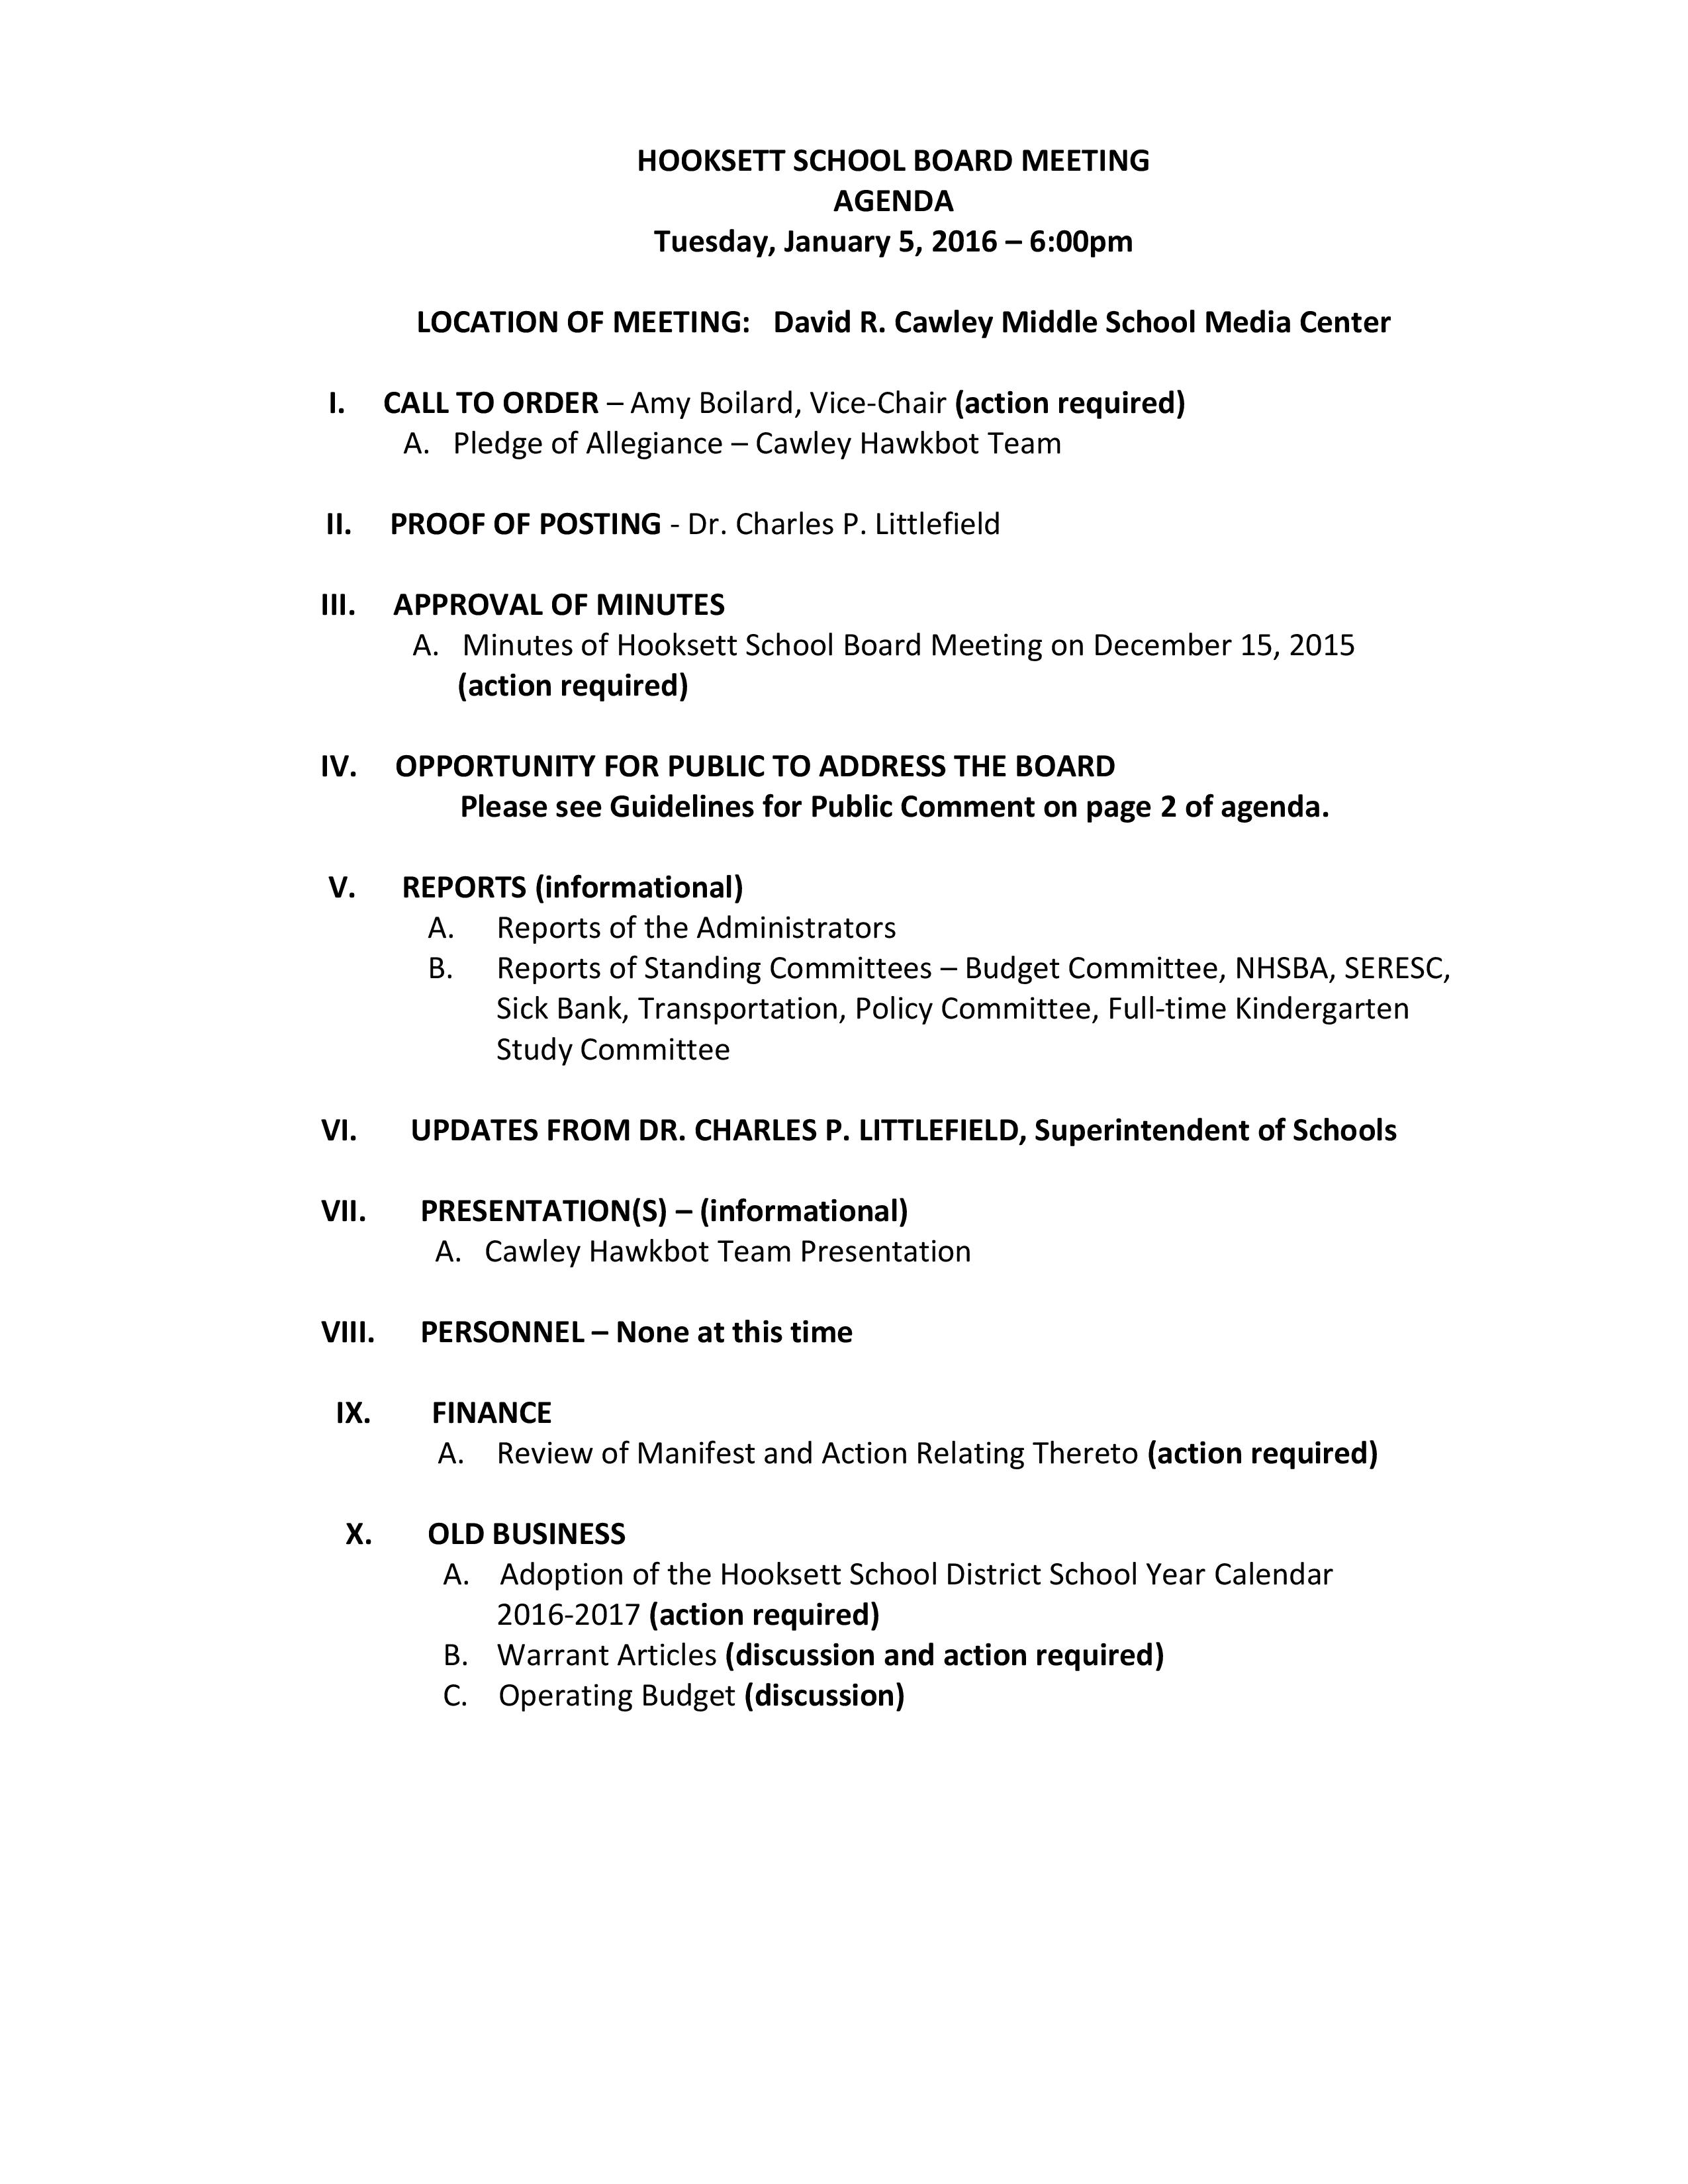 Agenda-1-5-16P1-page-001